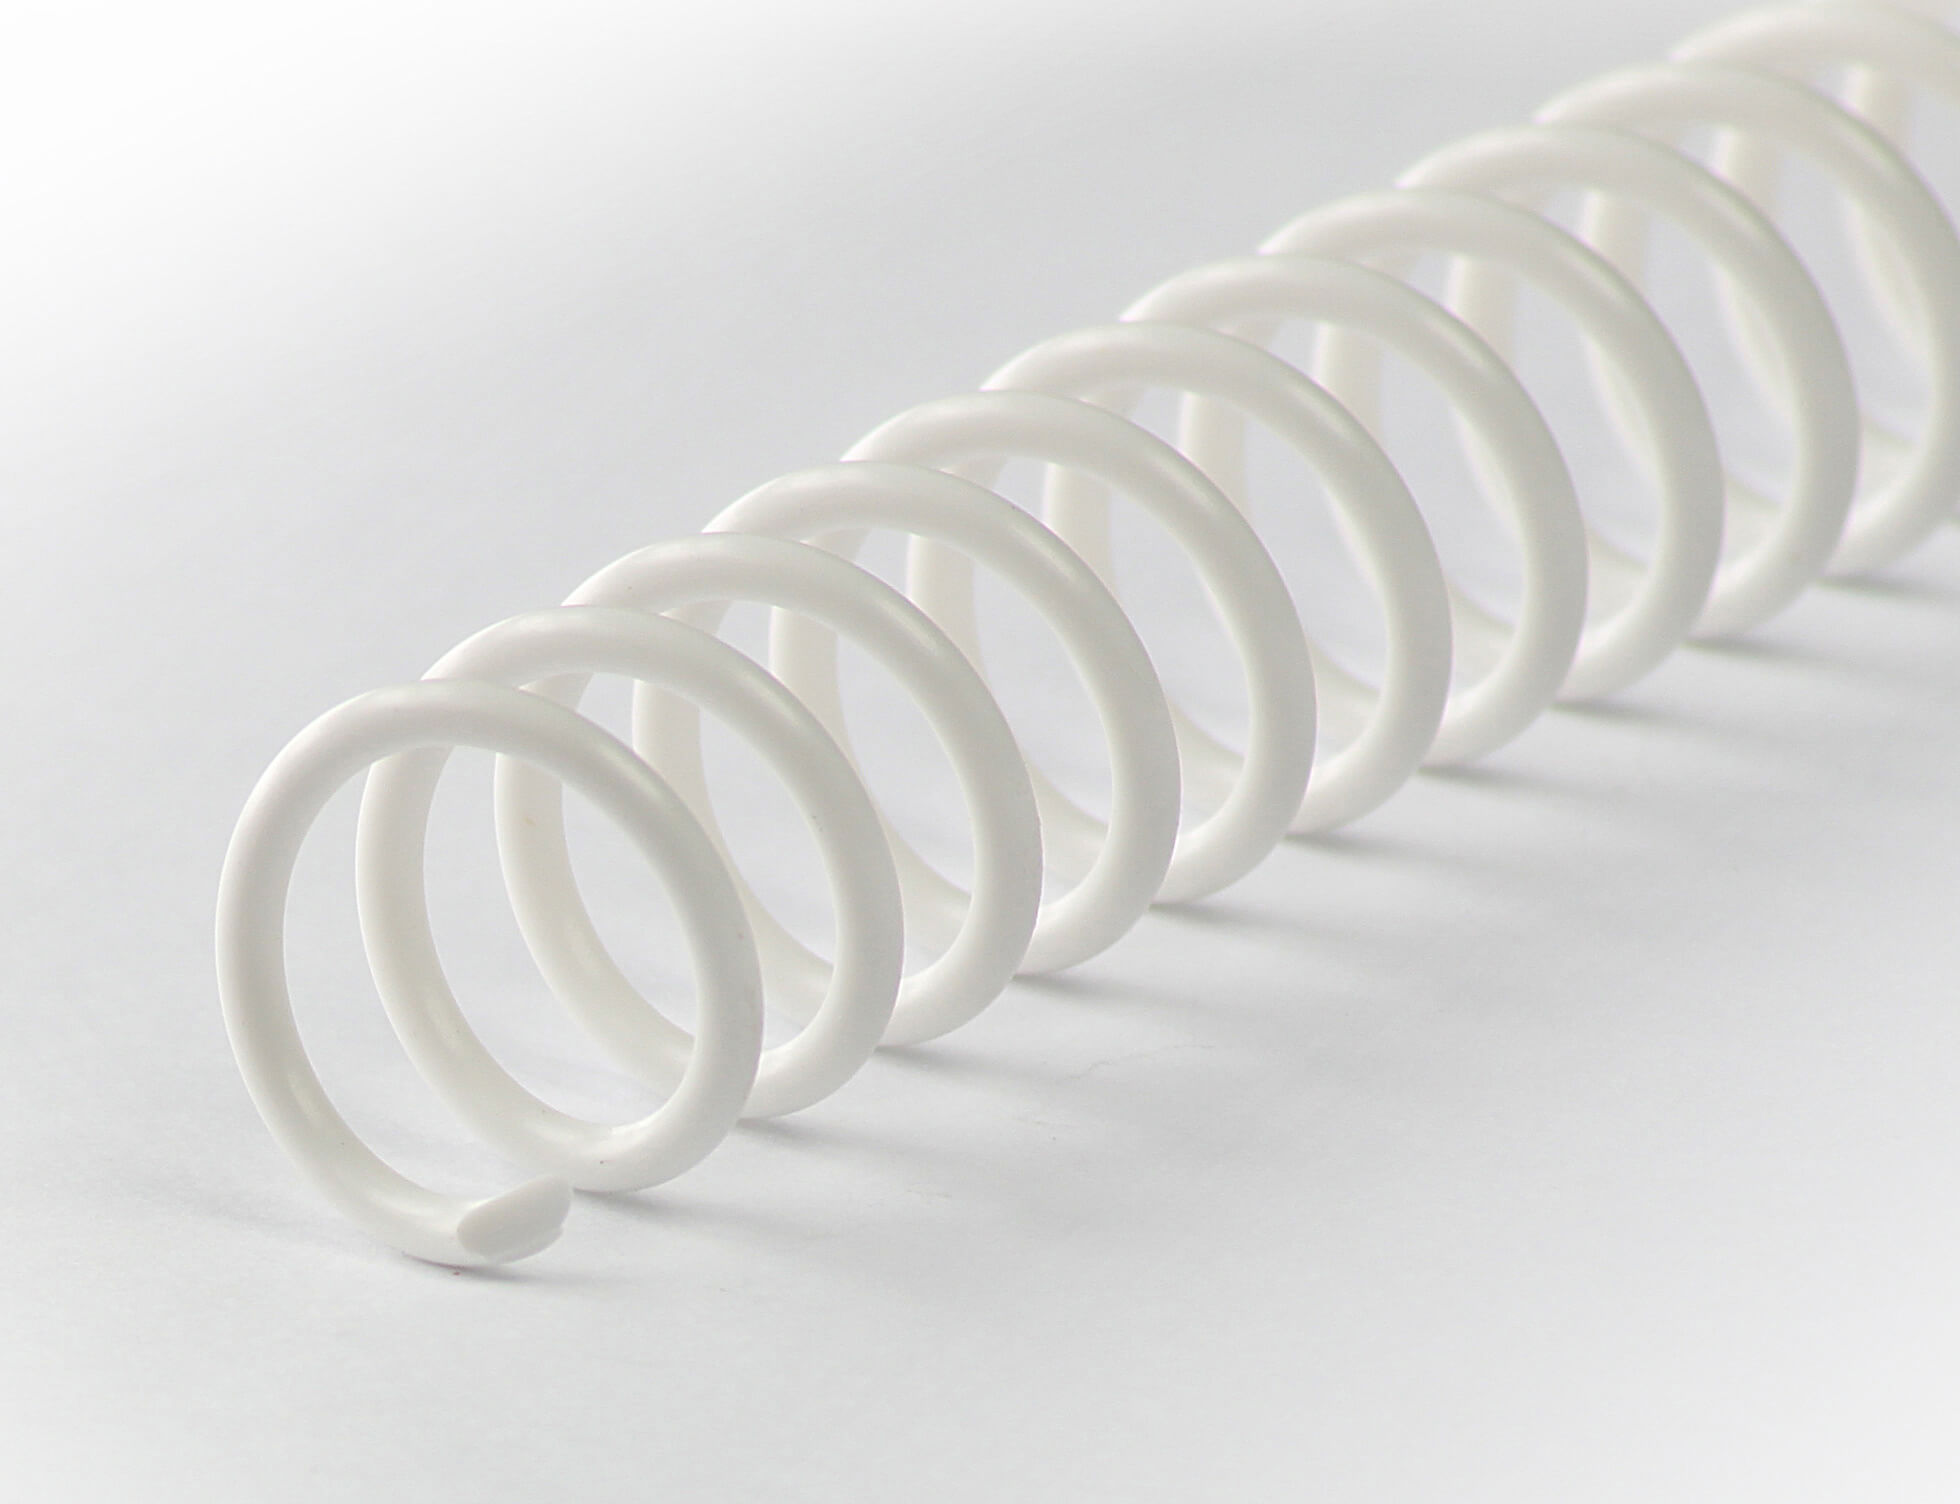 Binderücken CoilBind 47 Ringe 6mm, 4:1 Teilung weiß | Bestnr. CC06-WS